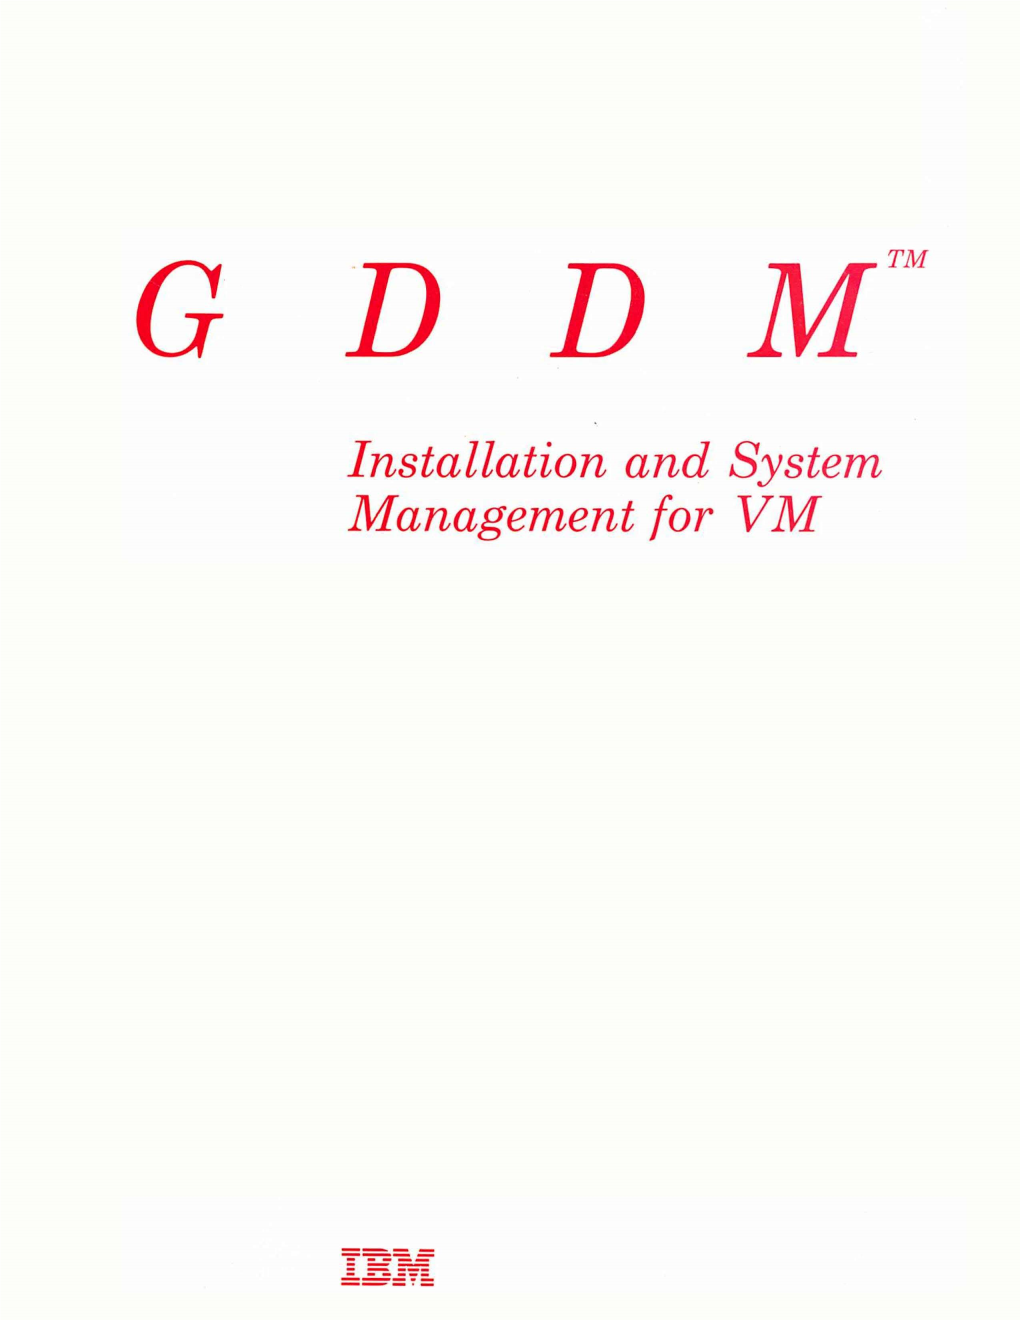 Management for VM